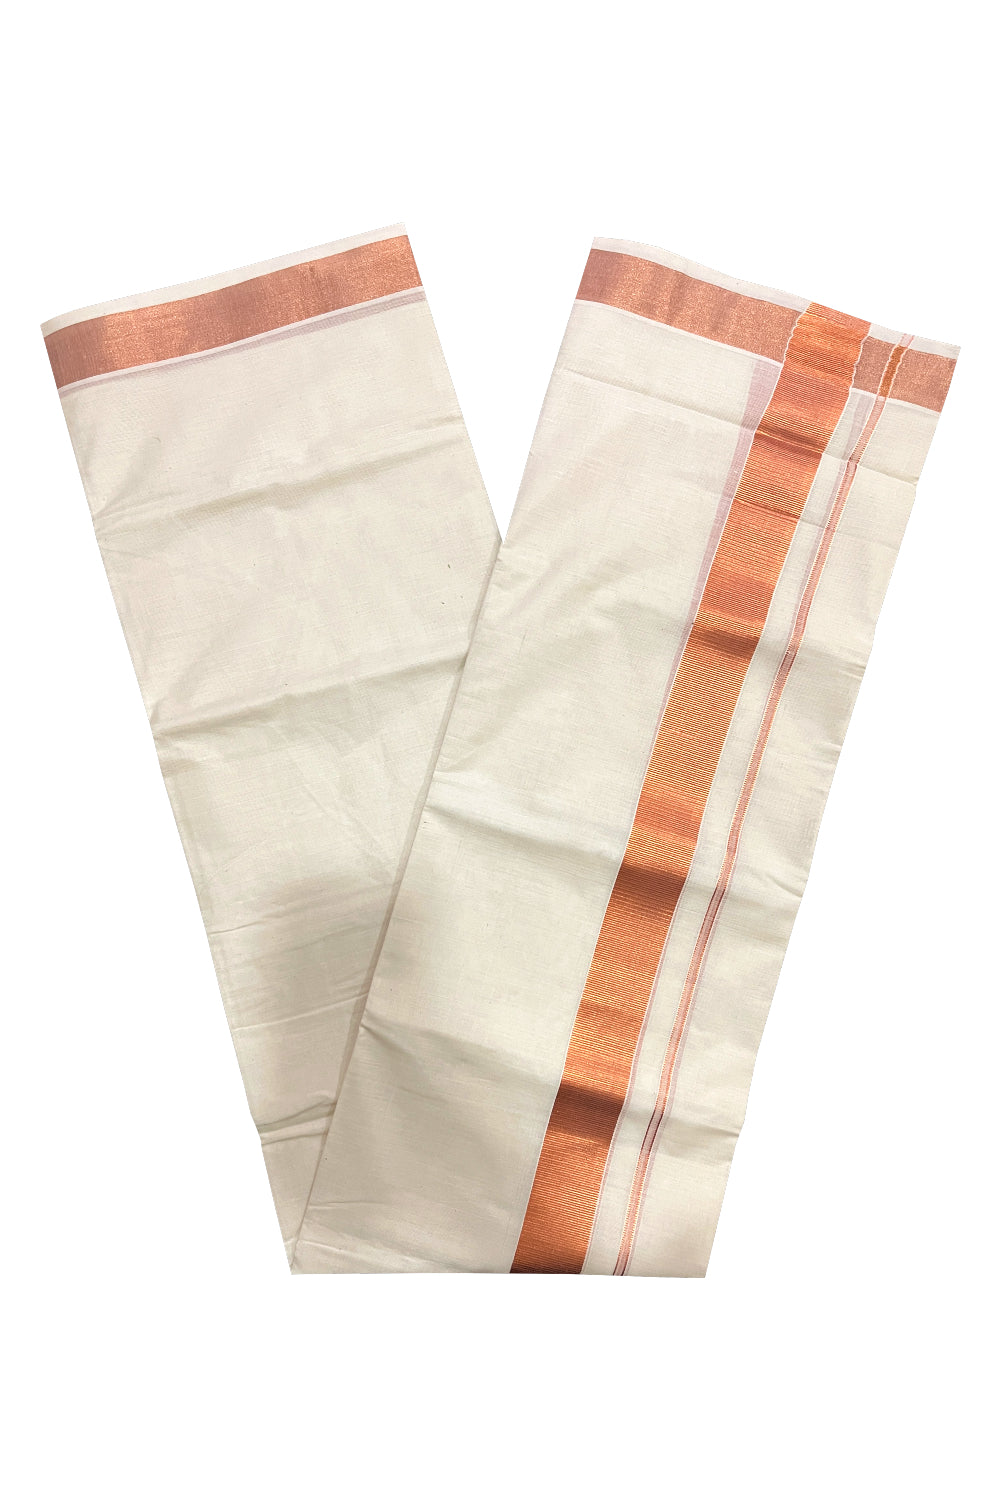 Pure Cotton Double Mundu with Copper Kasavu Kara 1.5 inches (South Indian Kerala Dhoti)